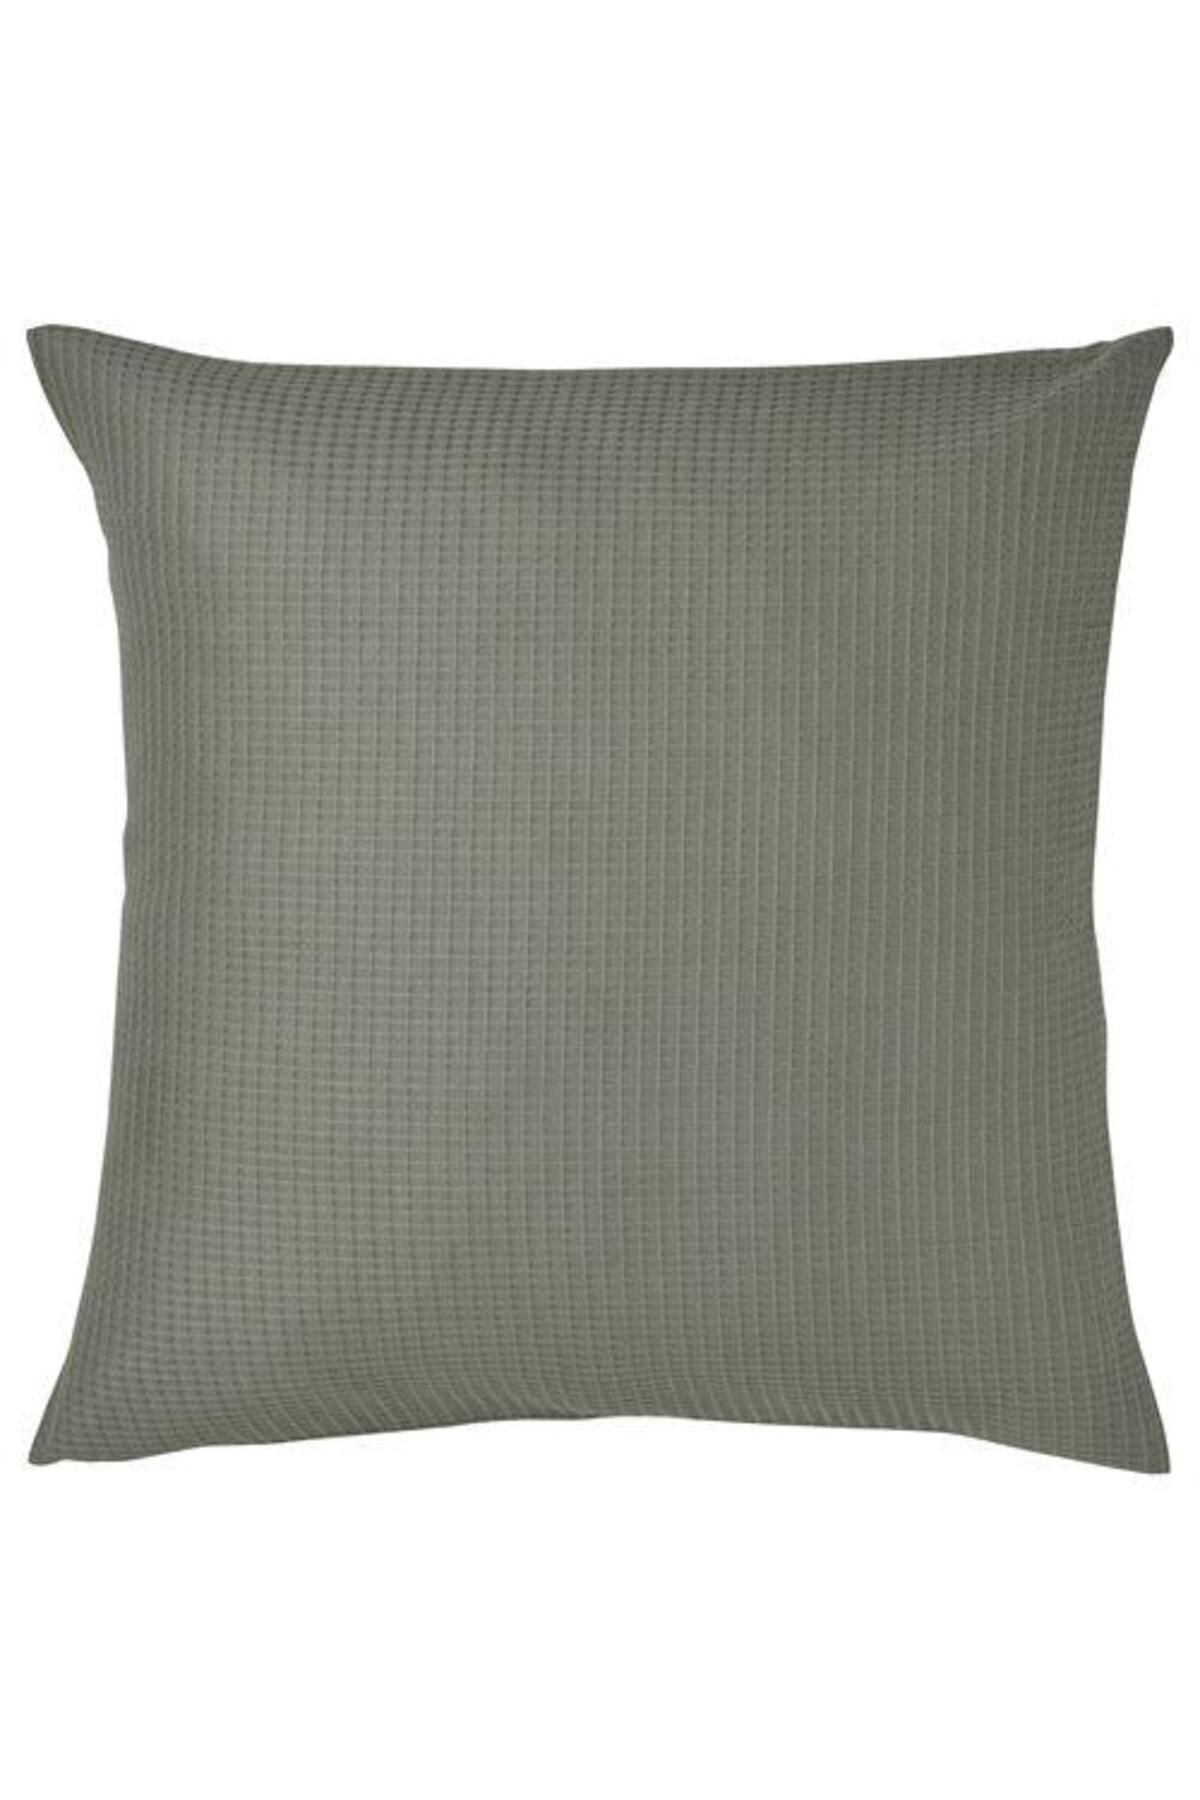 IKEA Kırlent Kılıfı, Haki Renk Meridyendukkan 50x50 Cm Ev Tekstil Ürünleri 1 Adet